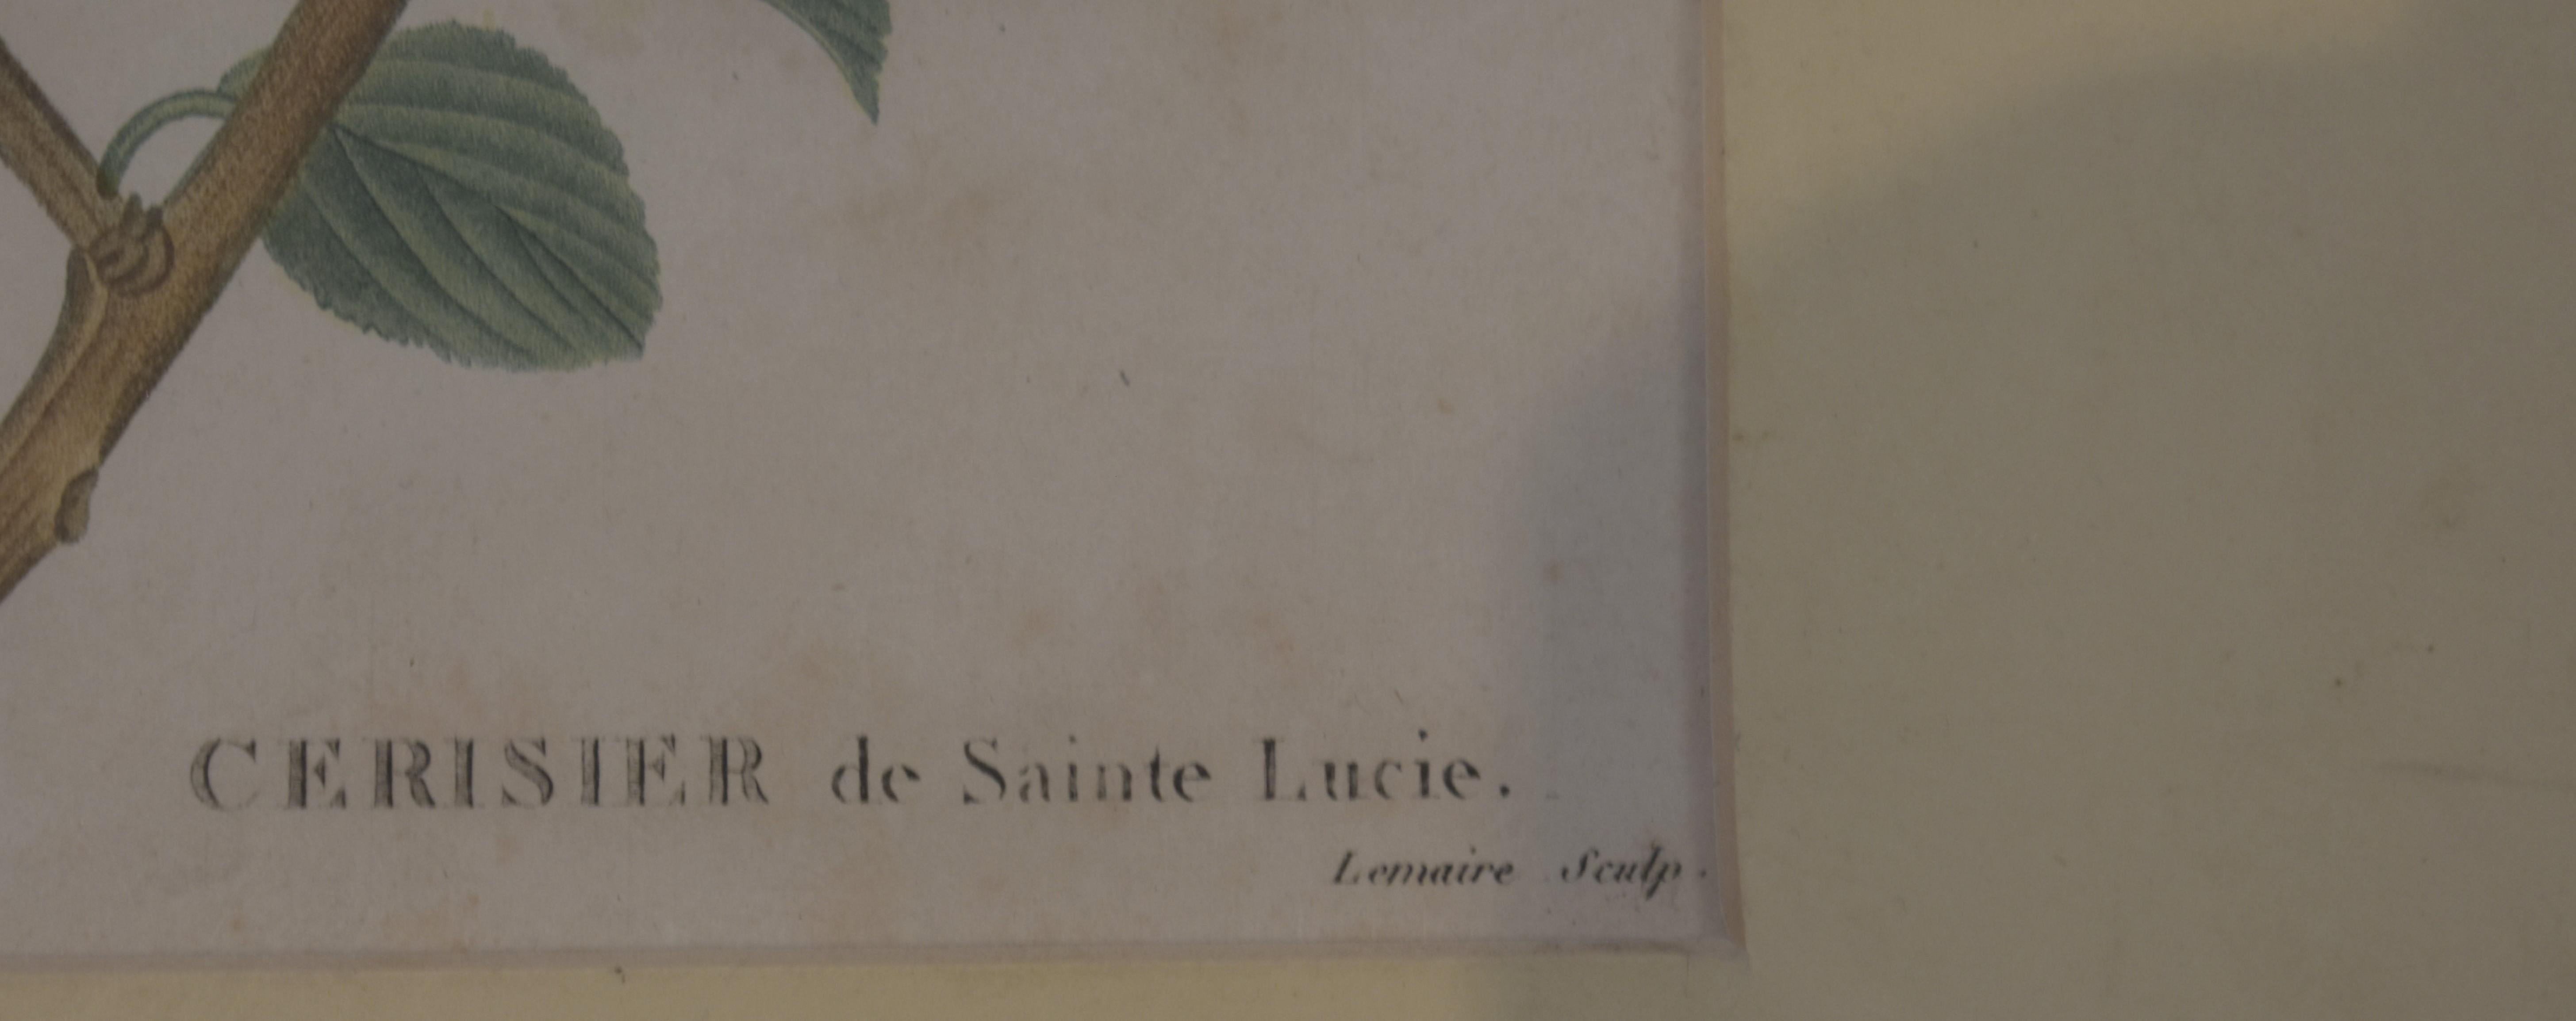 Impression botanique de Redoute, 18e siècle - Maîtres anciens Print par Pierre Joseph Redoute